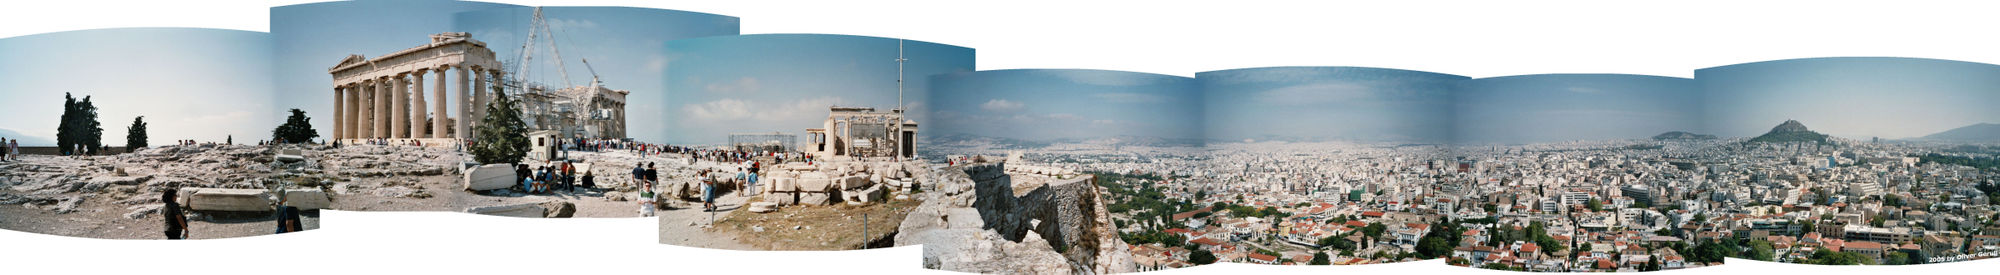 Panorama der Akropolis